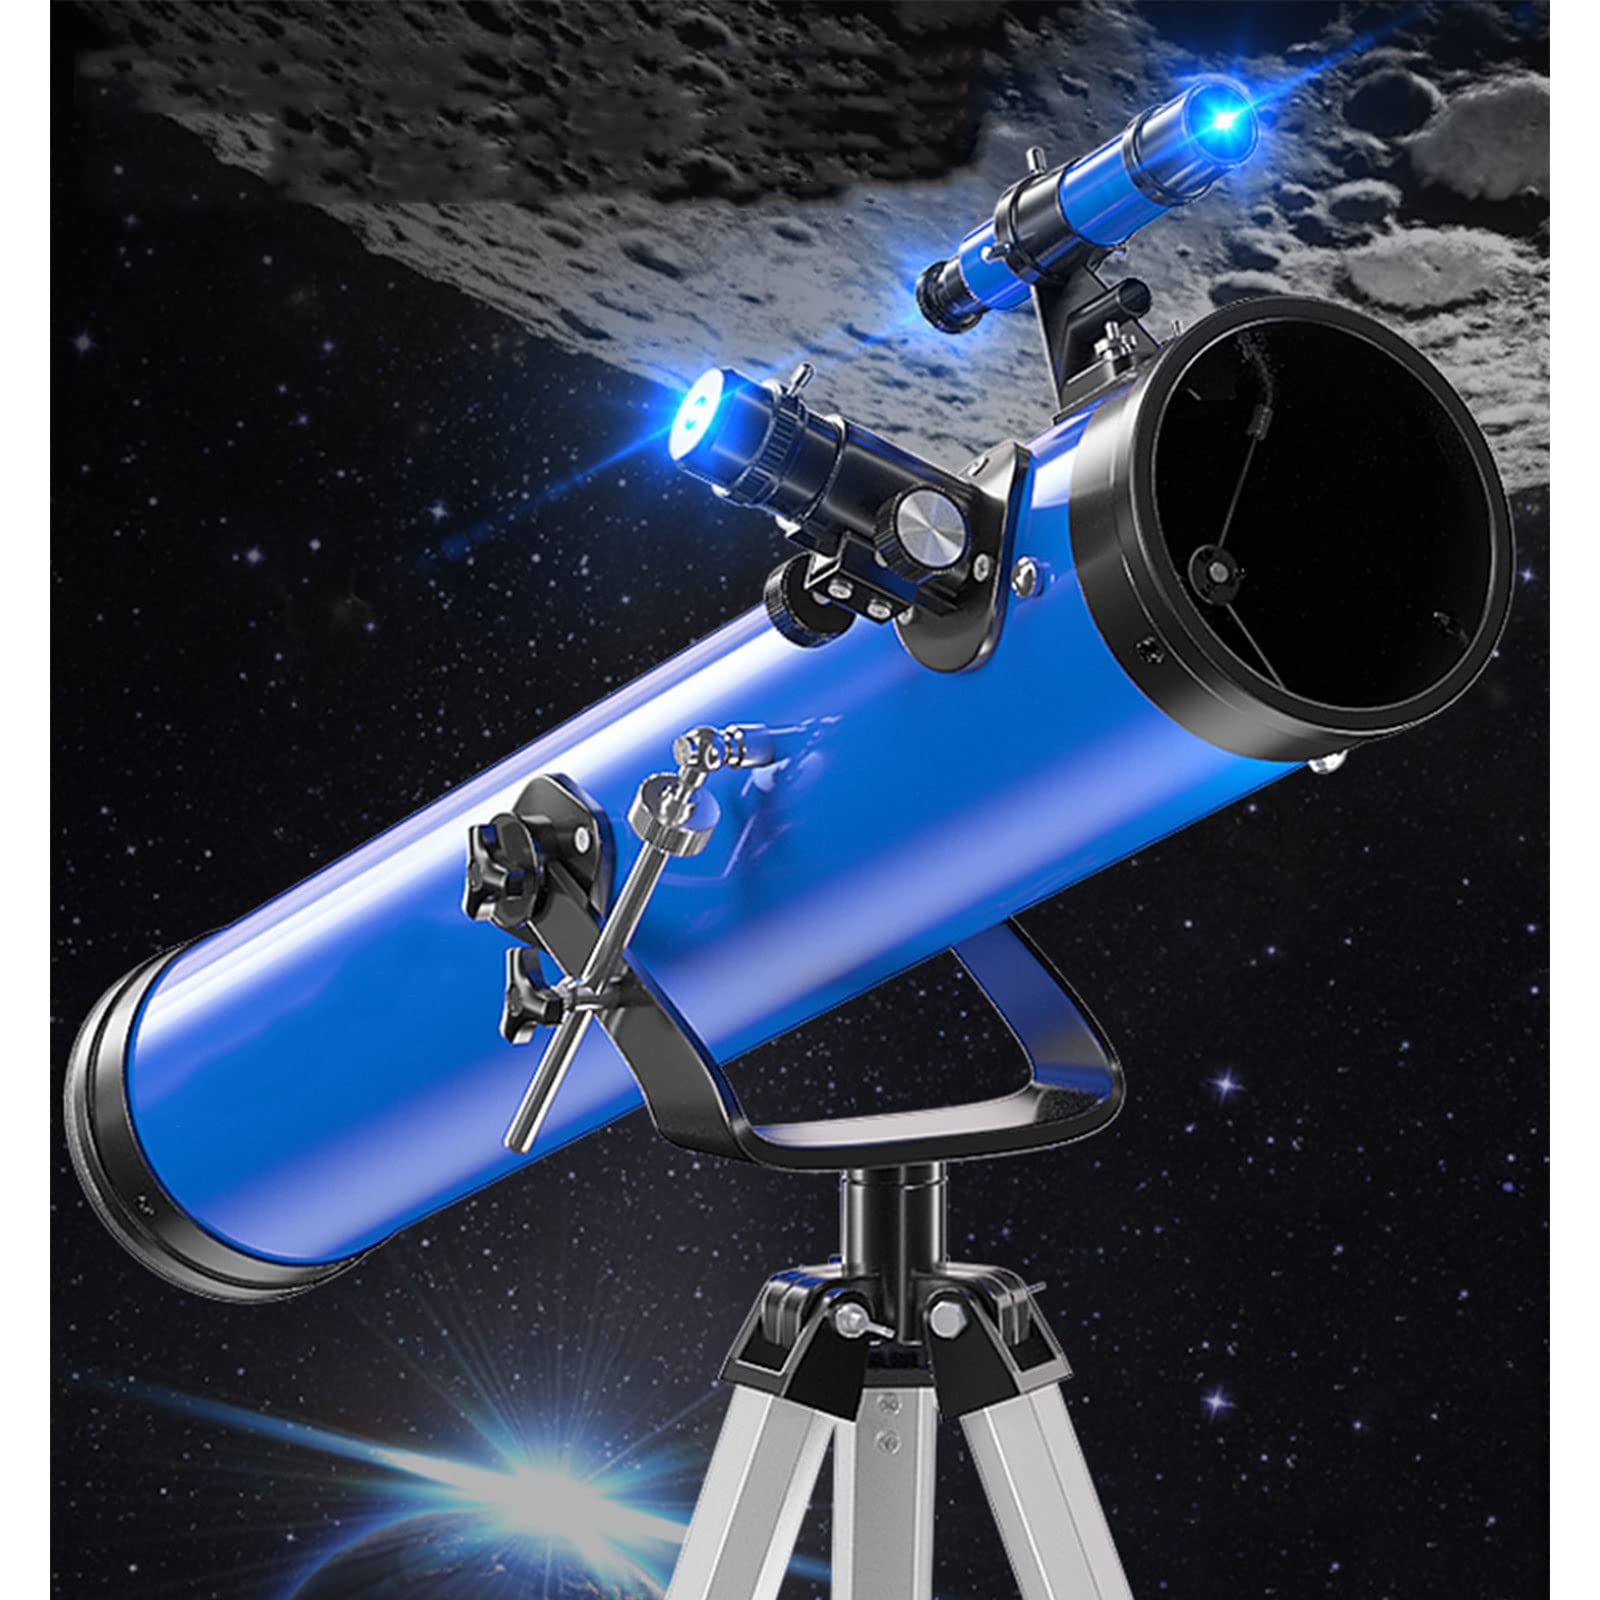 Spacmirrors Teleskop für Astronomie, Teleskop für Kinder, tragbares Teleskop – einfach zu montieren und zu verwenden – ideal für Kinder und Anfänger Erwachsene – astronomisches Teleskop für Mond,